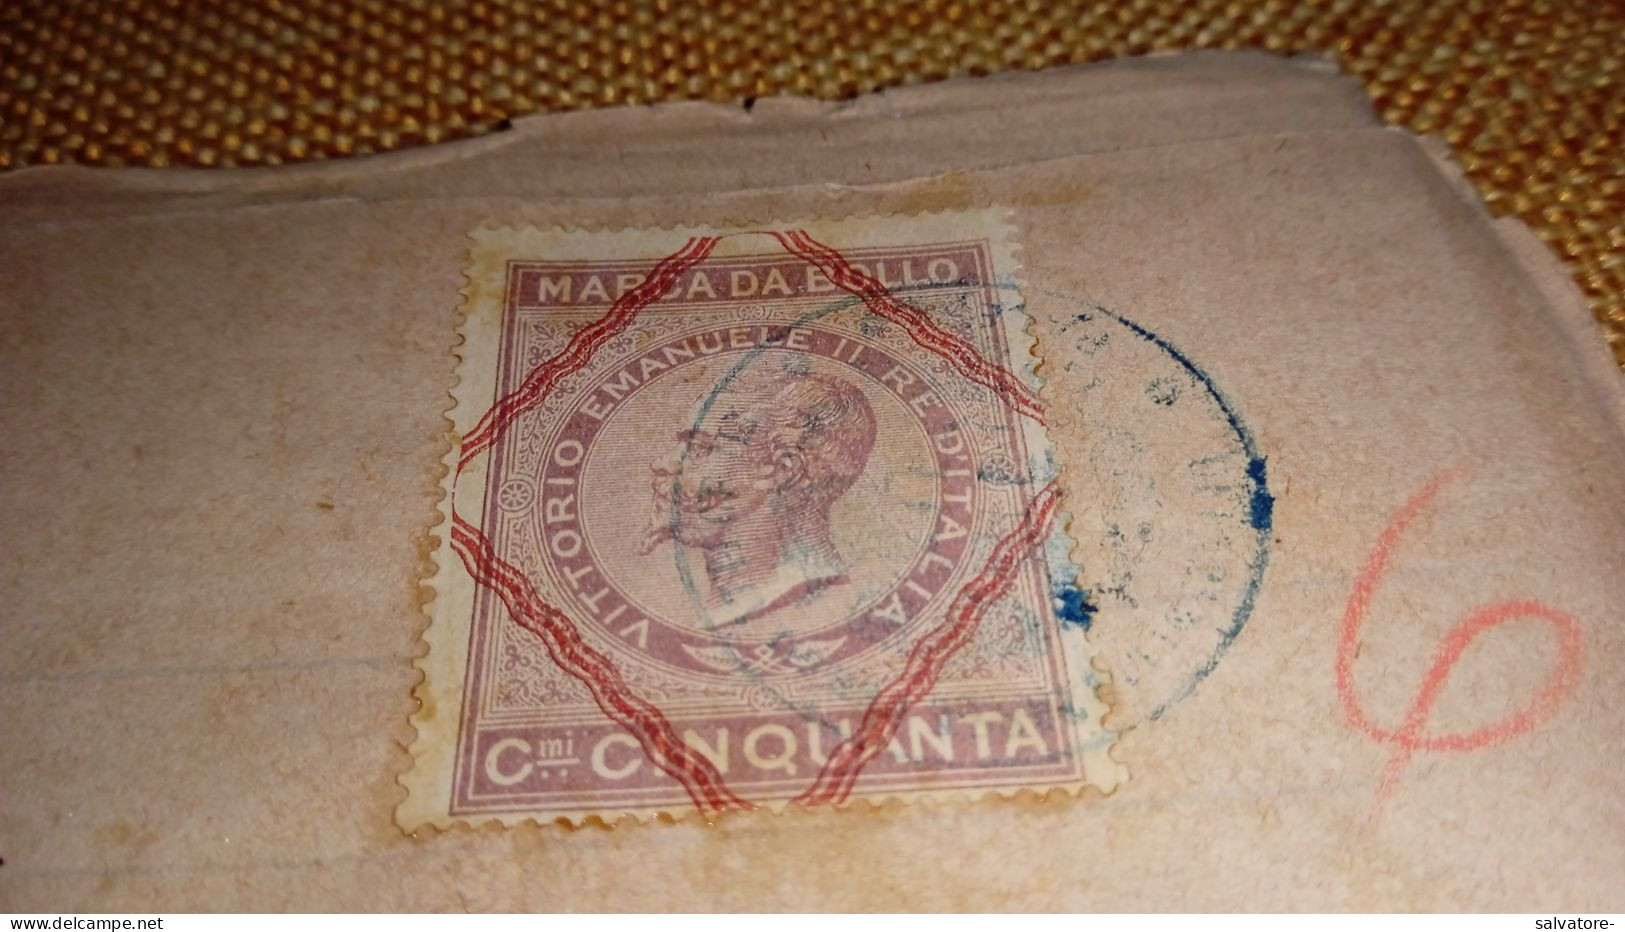 DOCUMENTO CON MARCA DA BOLLO CENTESIMI 50 VITTORIO EMANUELE Ii - Revenue Stamps